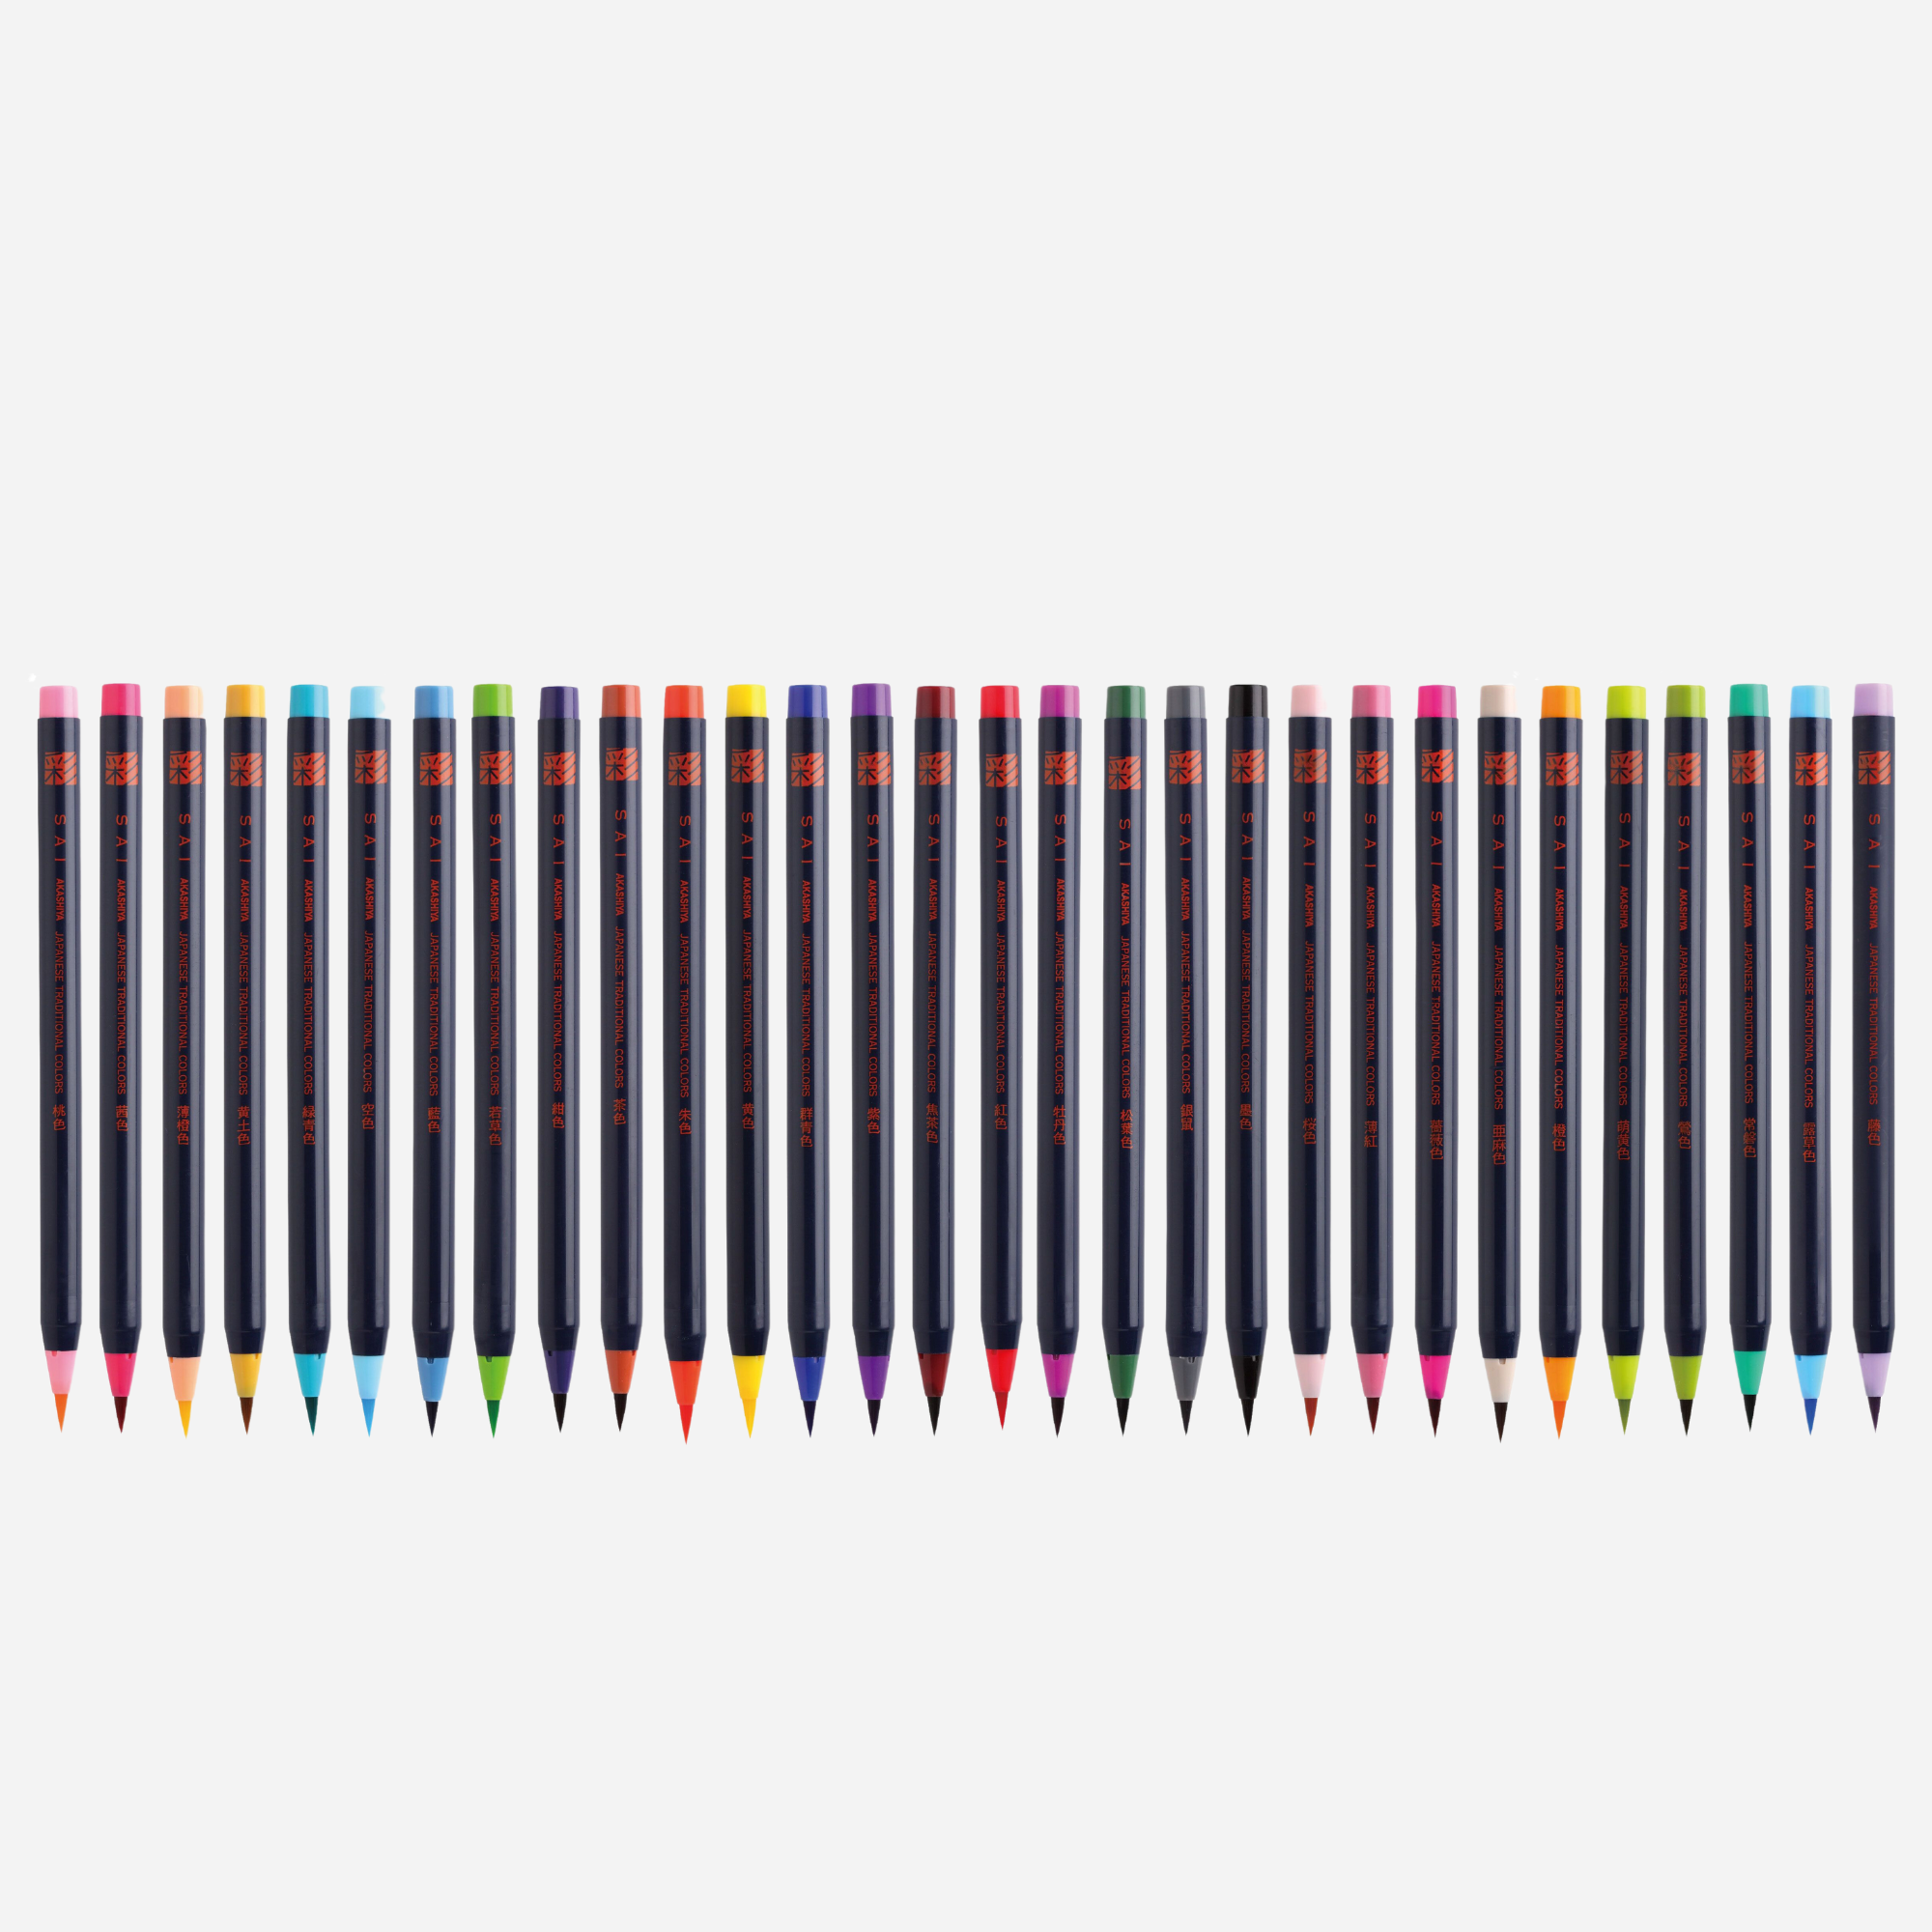 SUISAI Brush Pen 30 color set